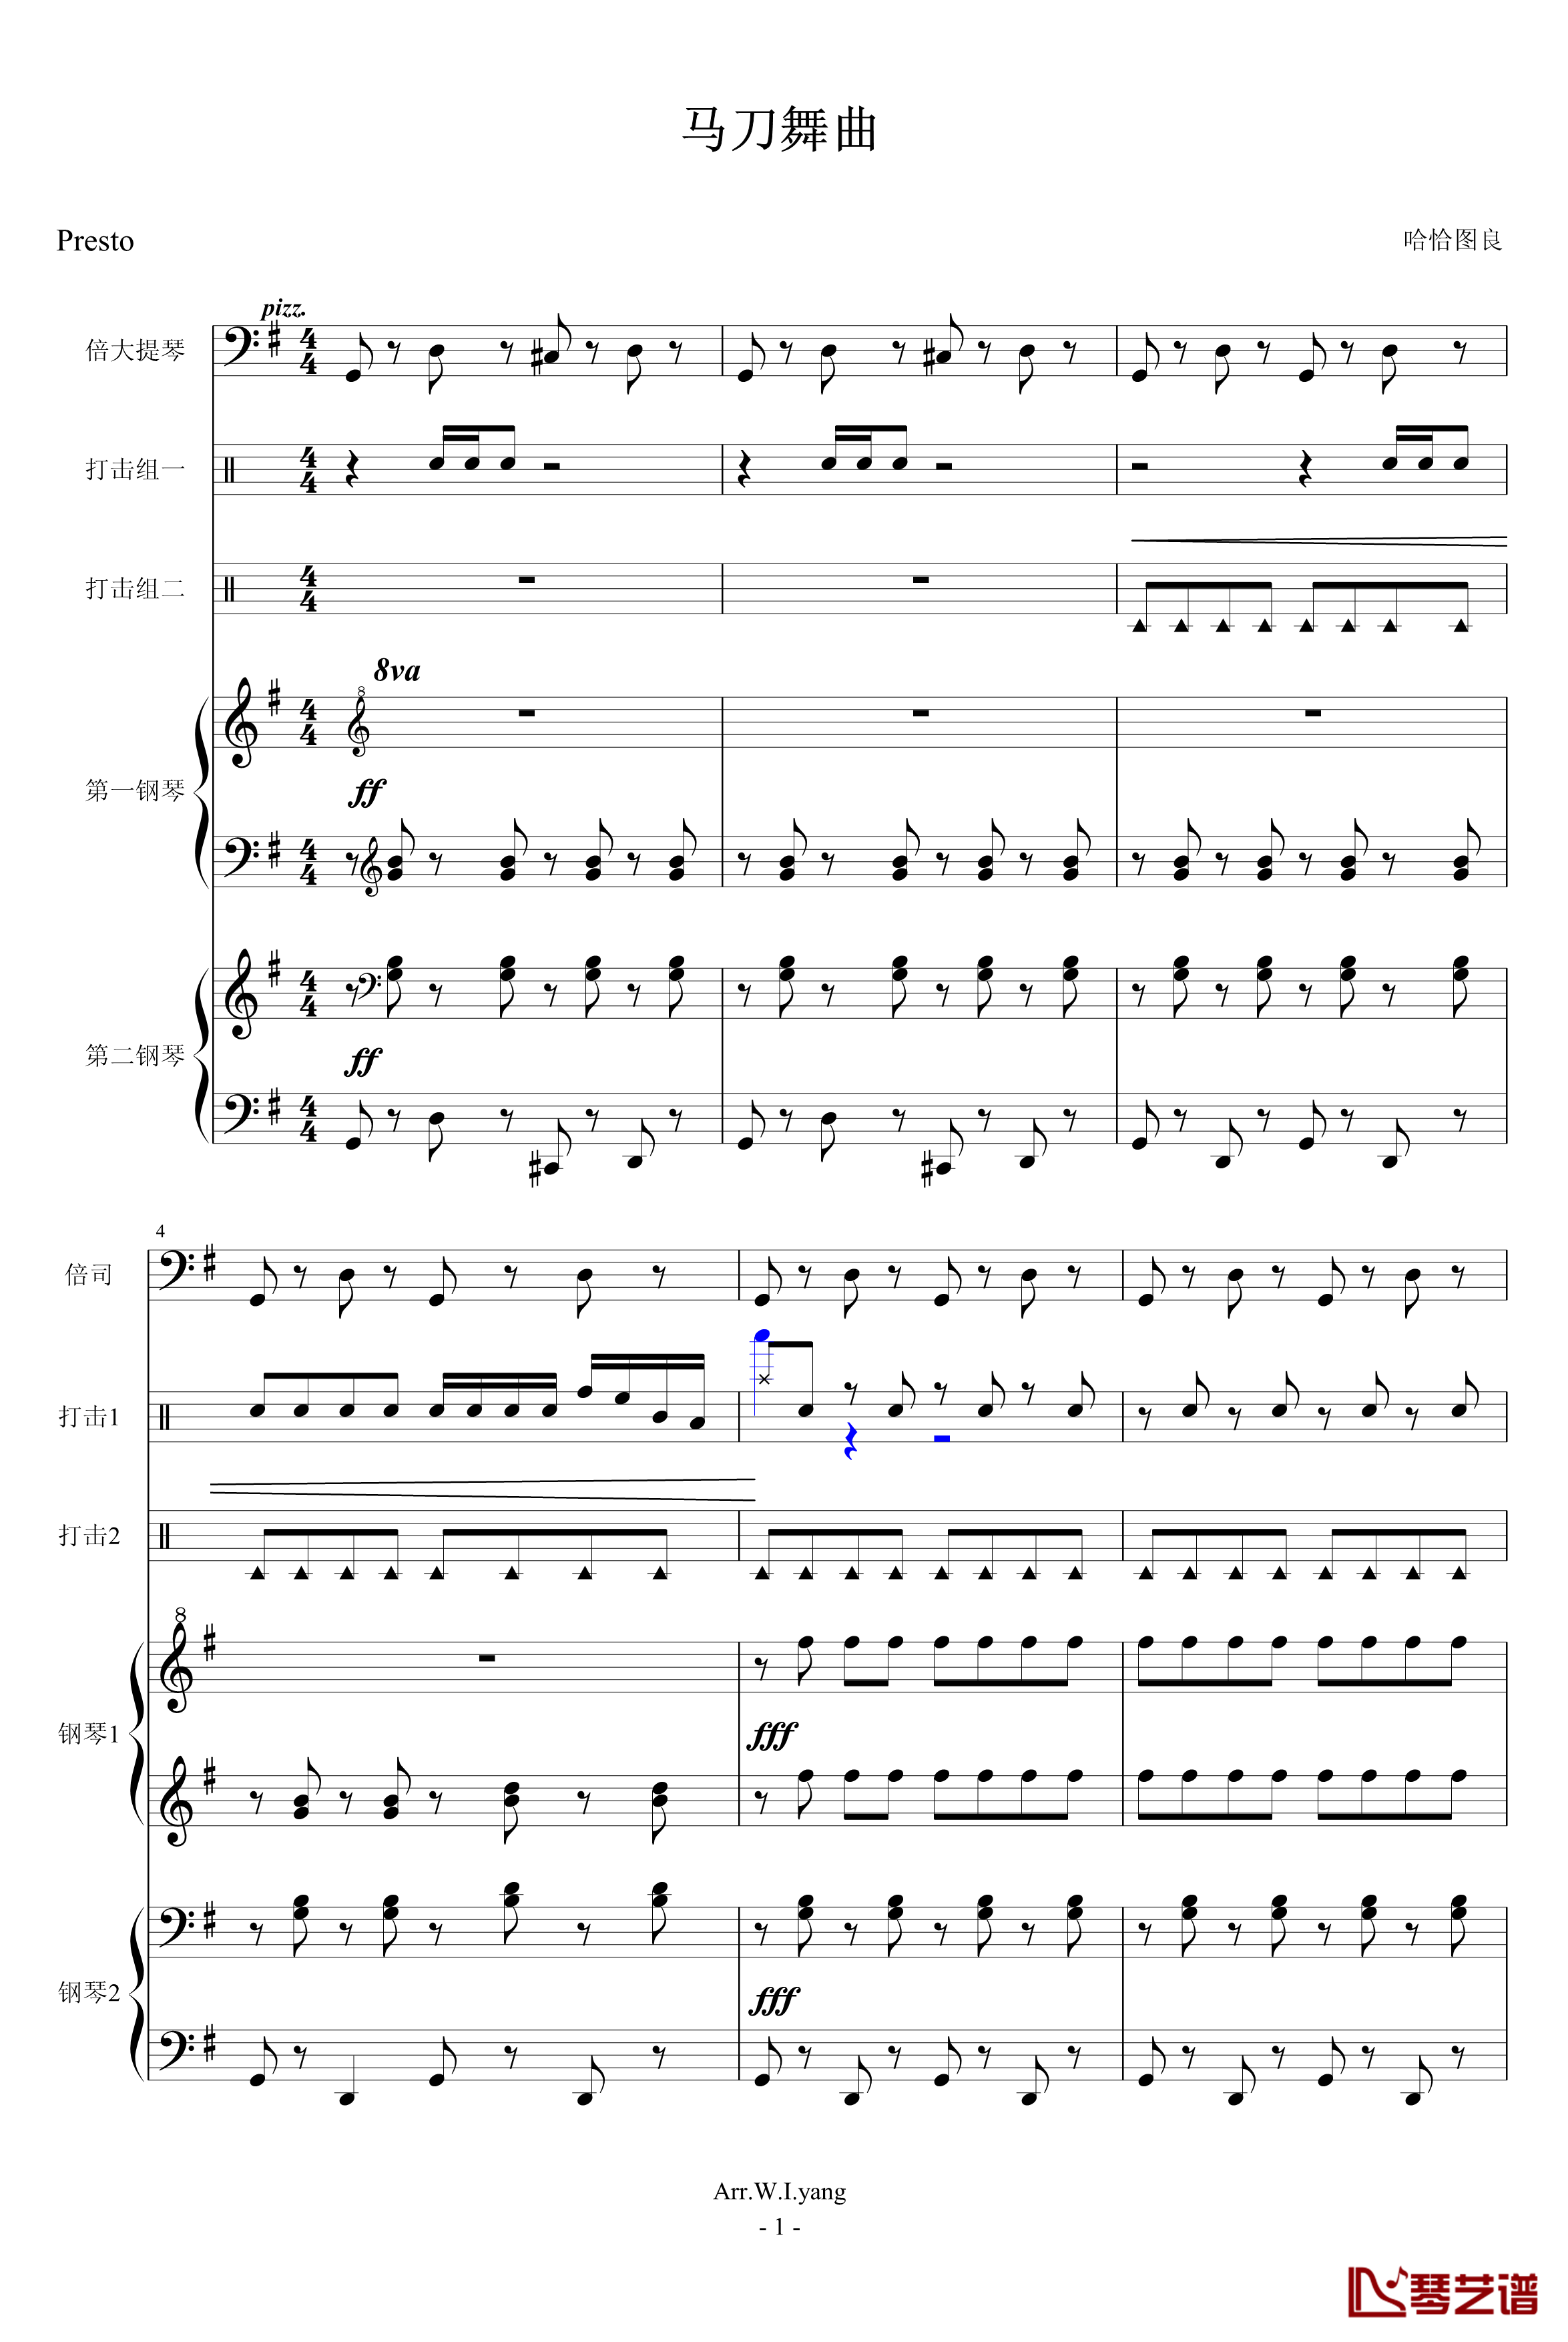 马刀舞曲钢琴谱-乐队总谱-世界名曲1